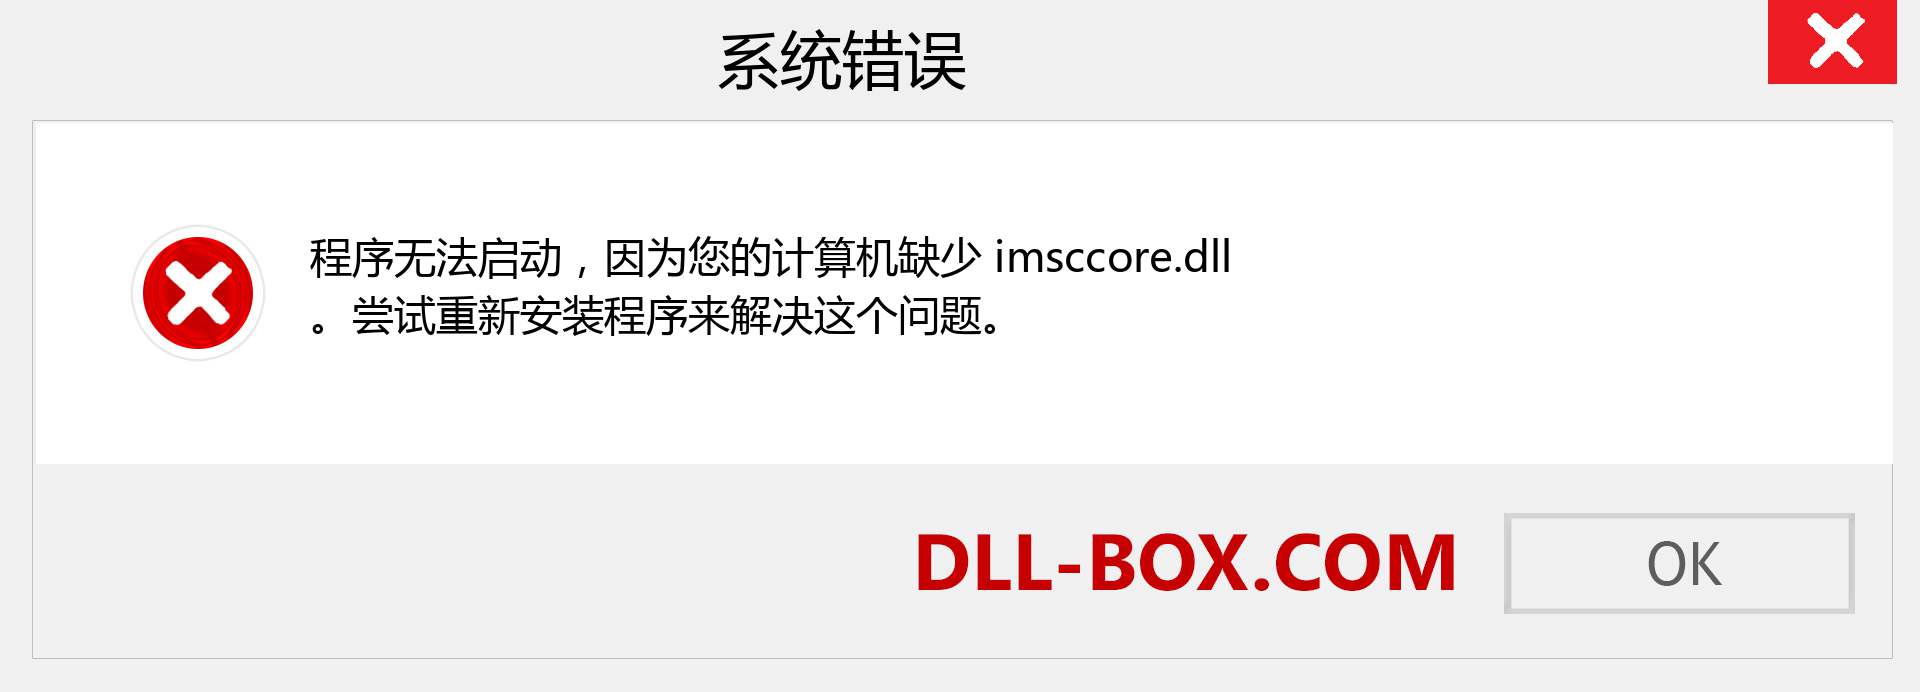 imsccore.dll 文件丢失？。 适用于 Windows 7、8、10 的下载 - 修复 Windows、照片、图像上的 imsccore dll 丢失错误